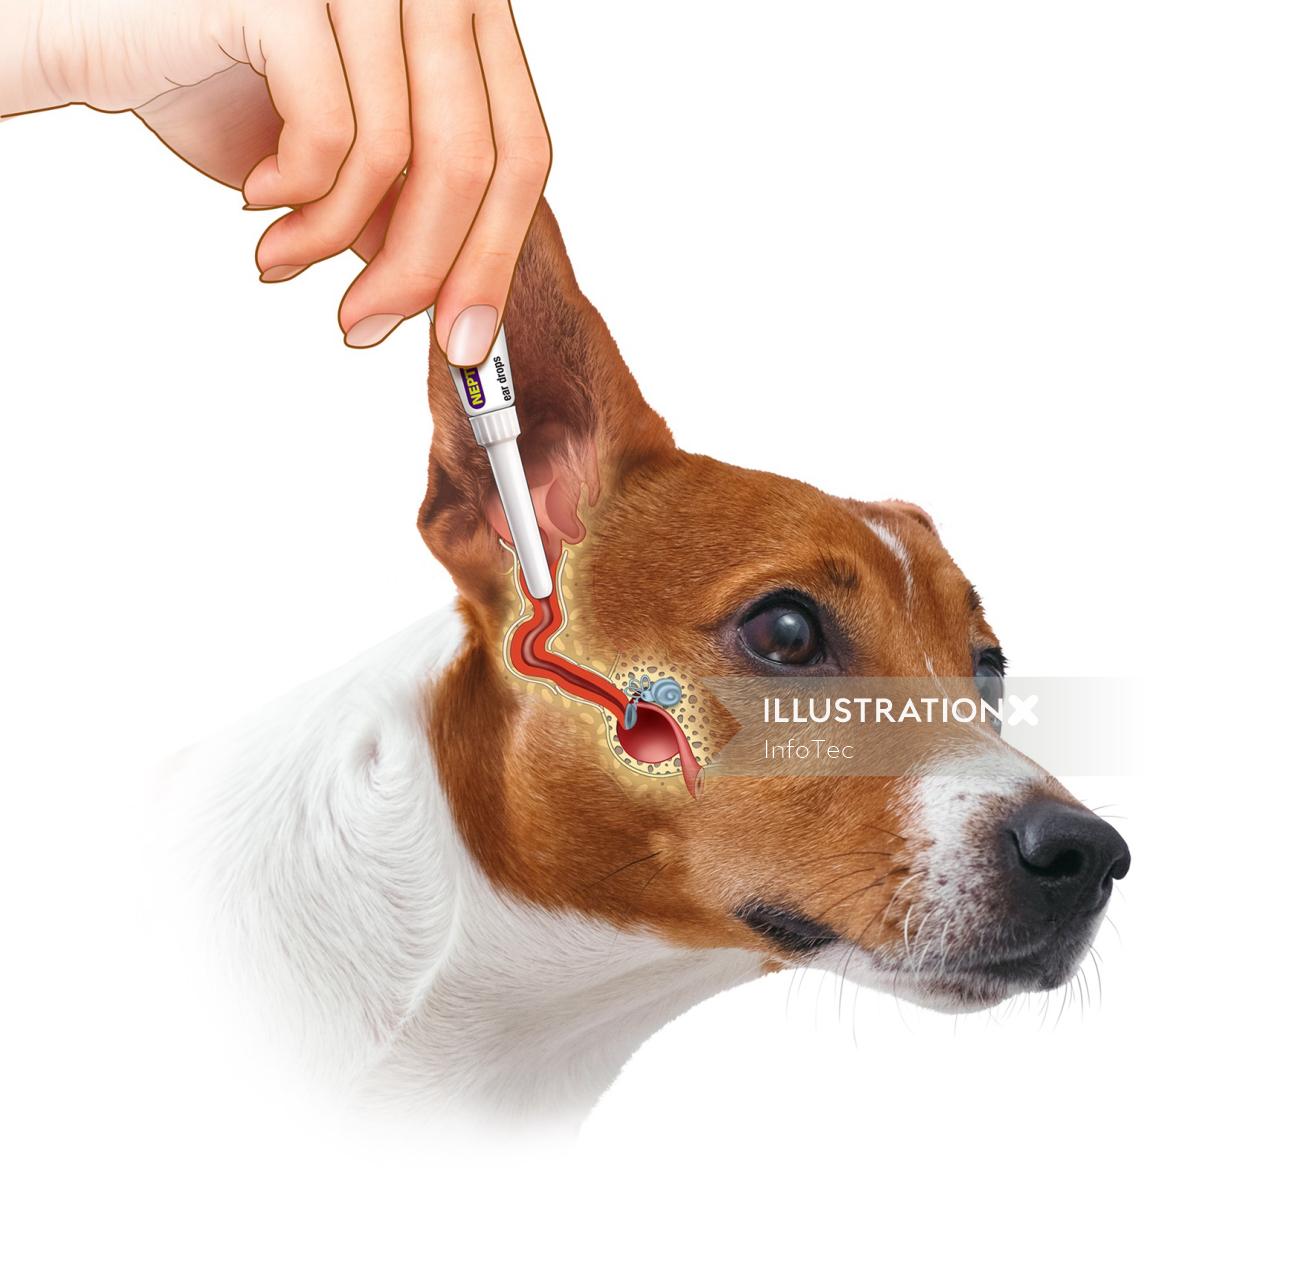 Medical ear medication for dog
